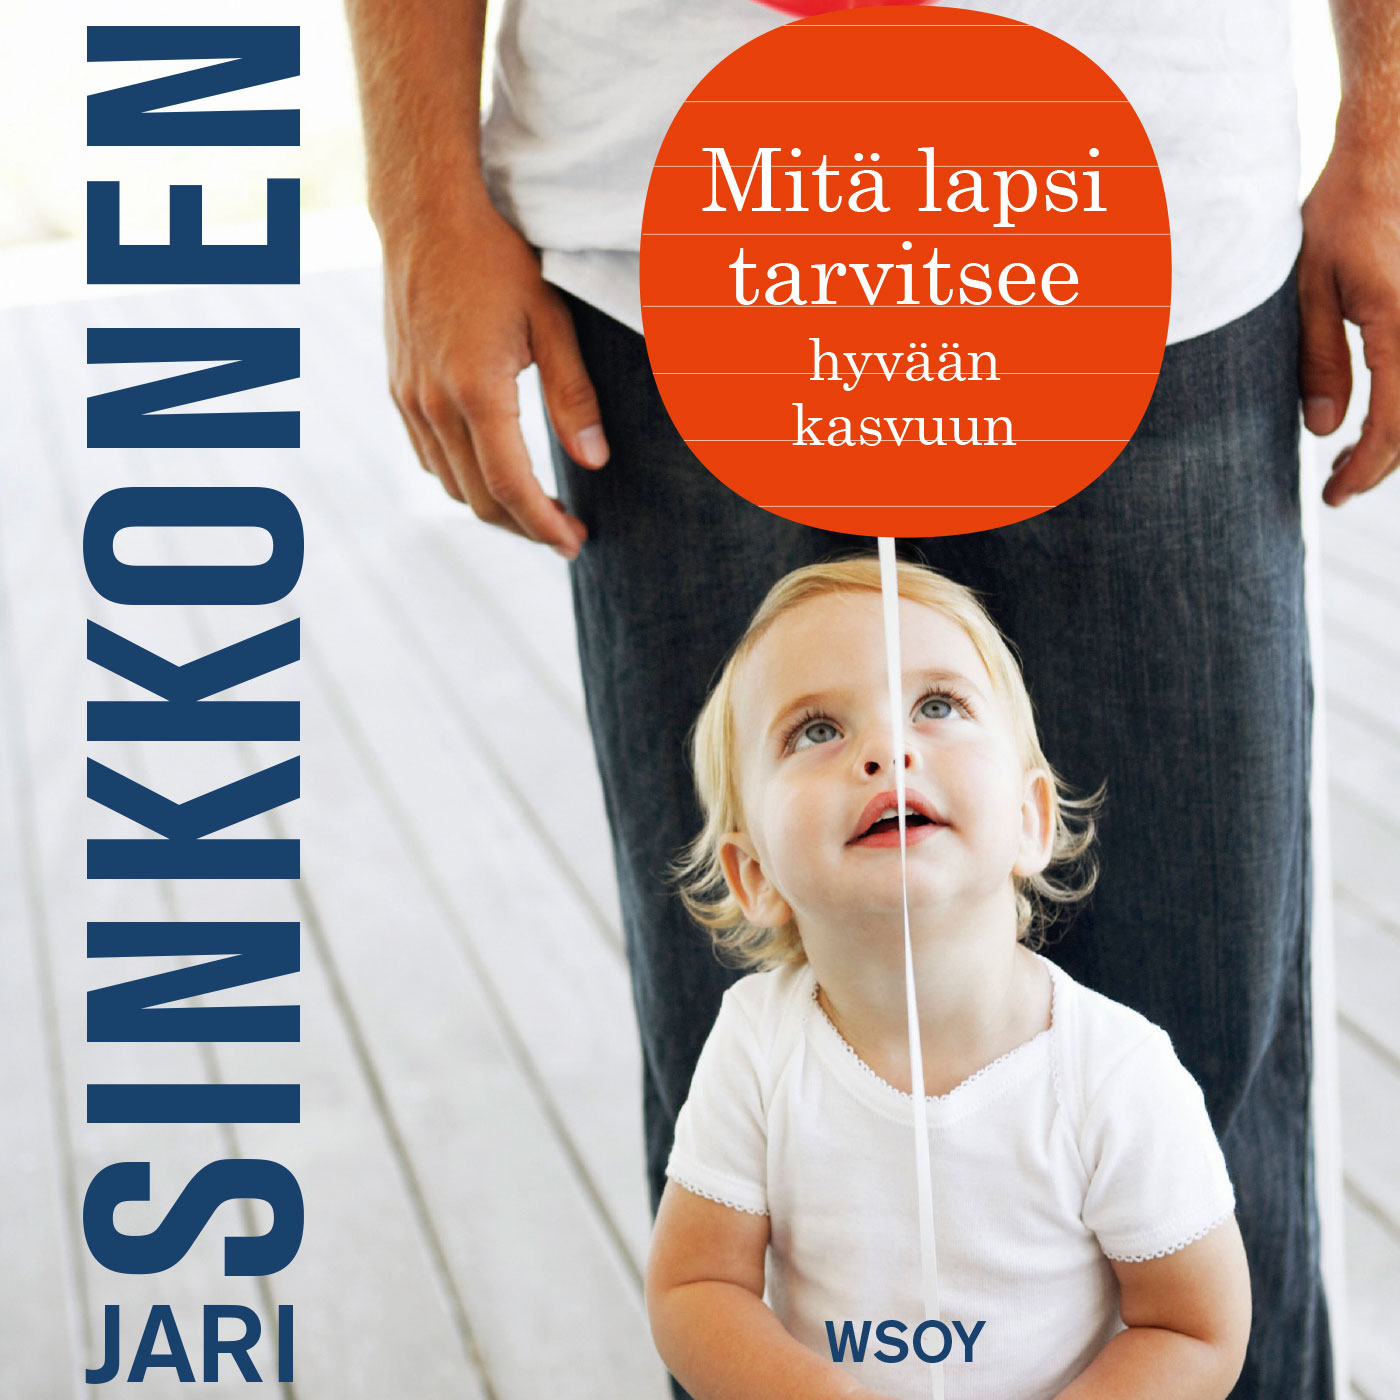 Sinkkonen, Jari - Mitä lapsi tarvitsee hyvään kasvuun, audiobook